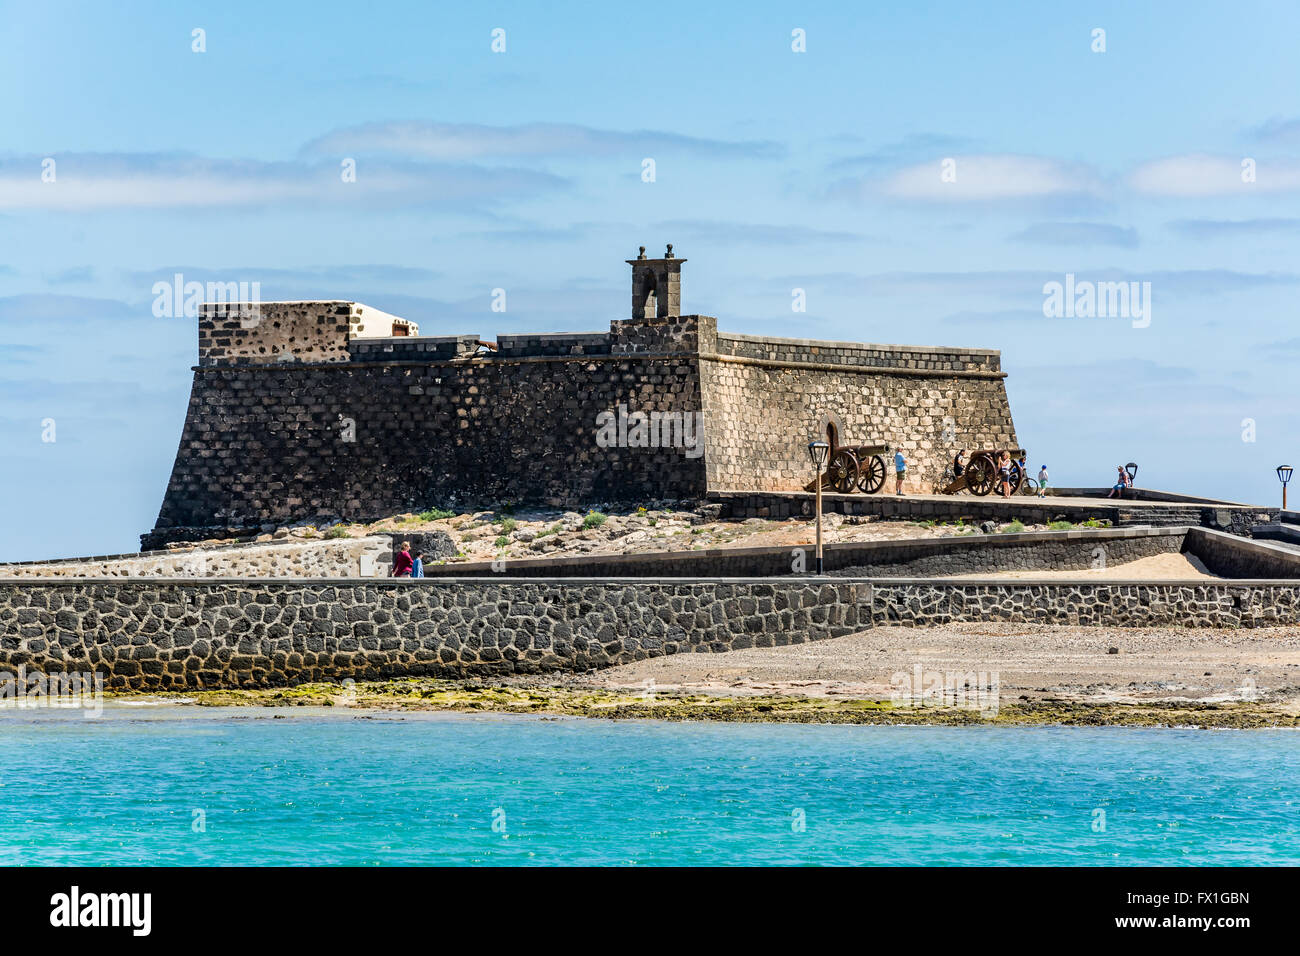 Castillo de San Gabriel - Saint Gabriel Castle in Arrecife und Kanonen davor Insel Lanzarote, Spanien Stockfoto